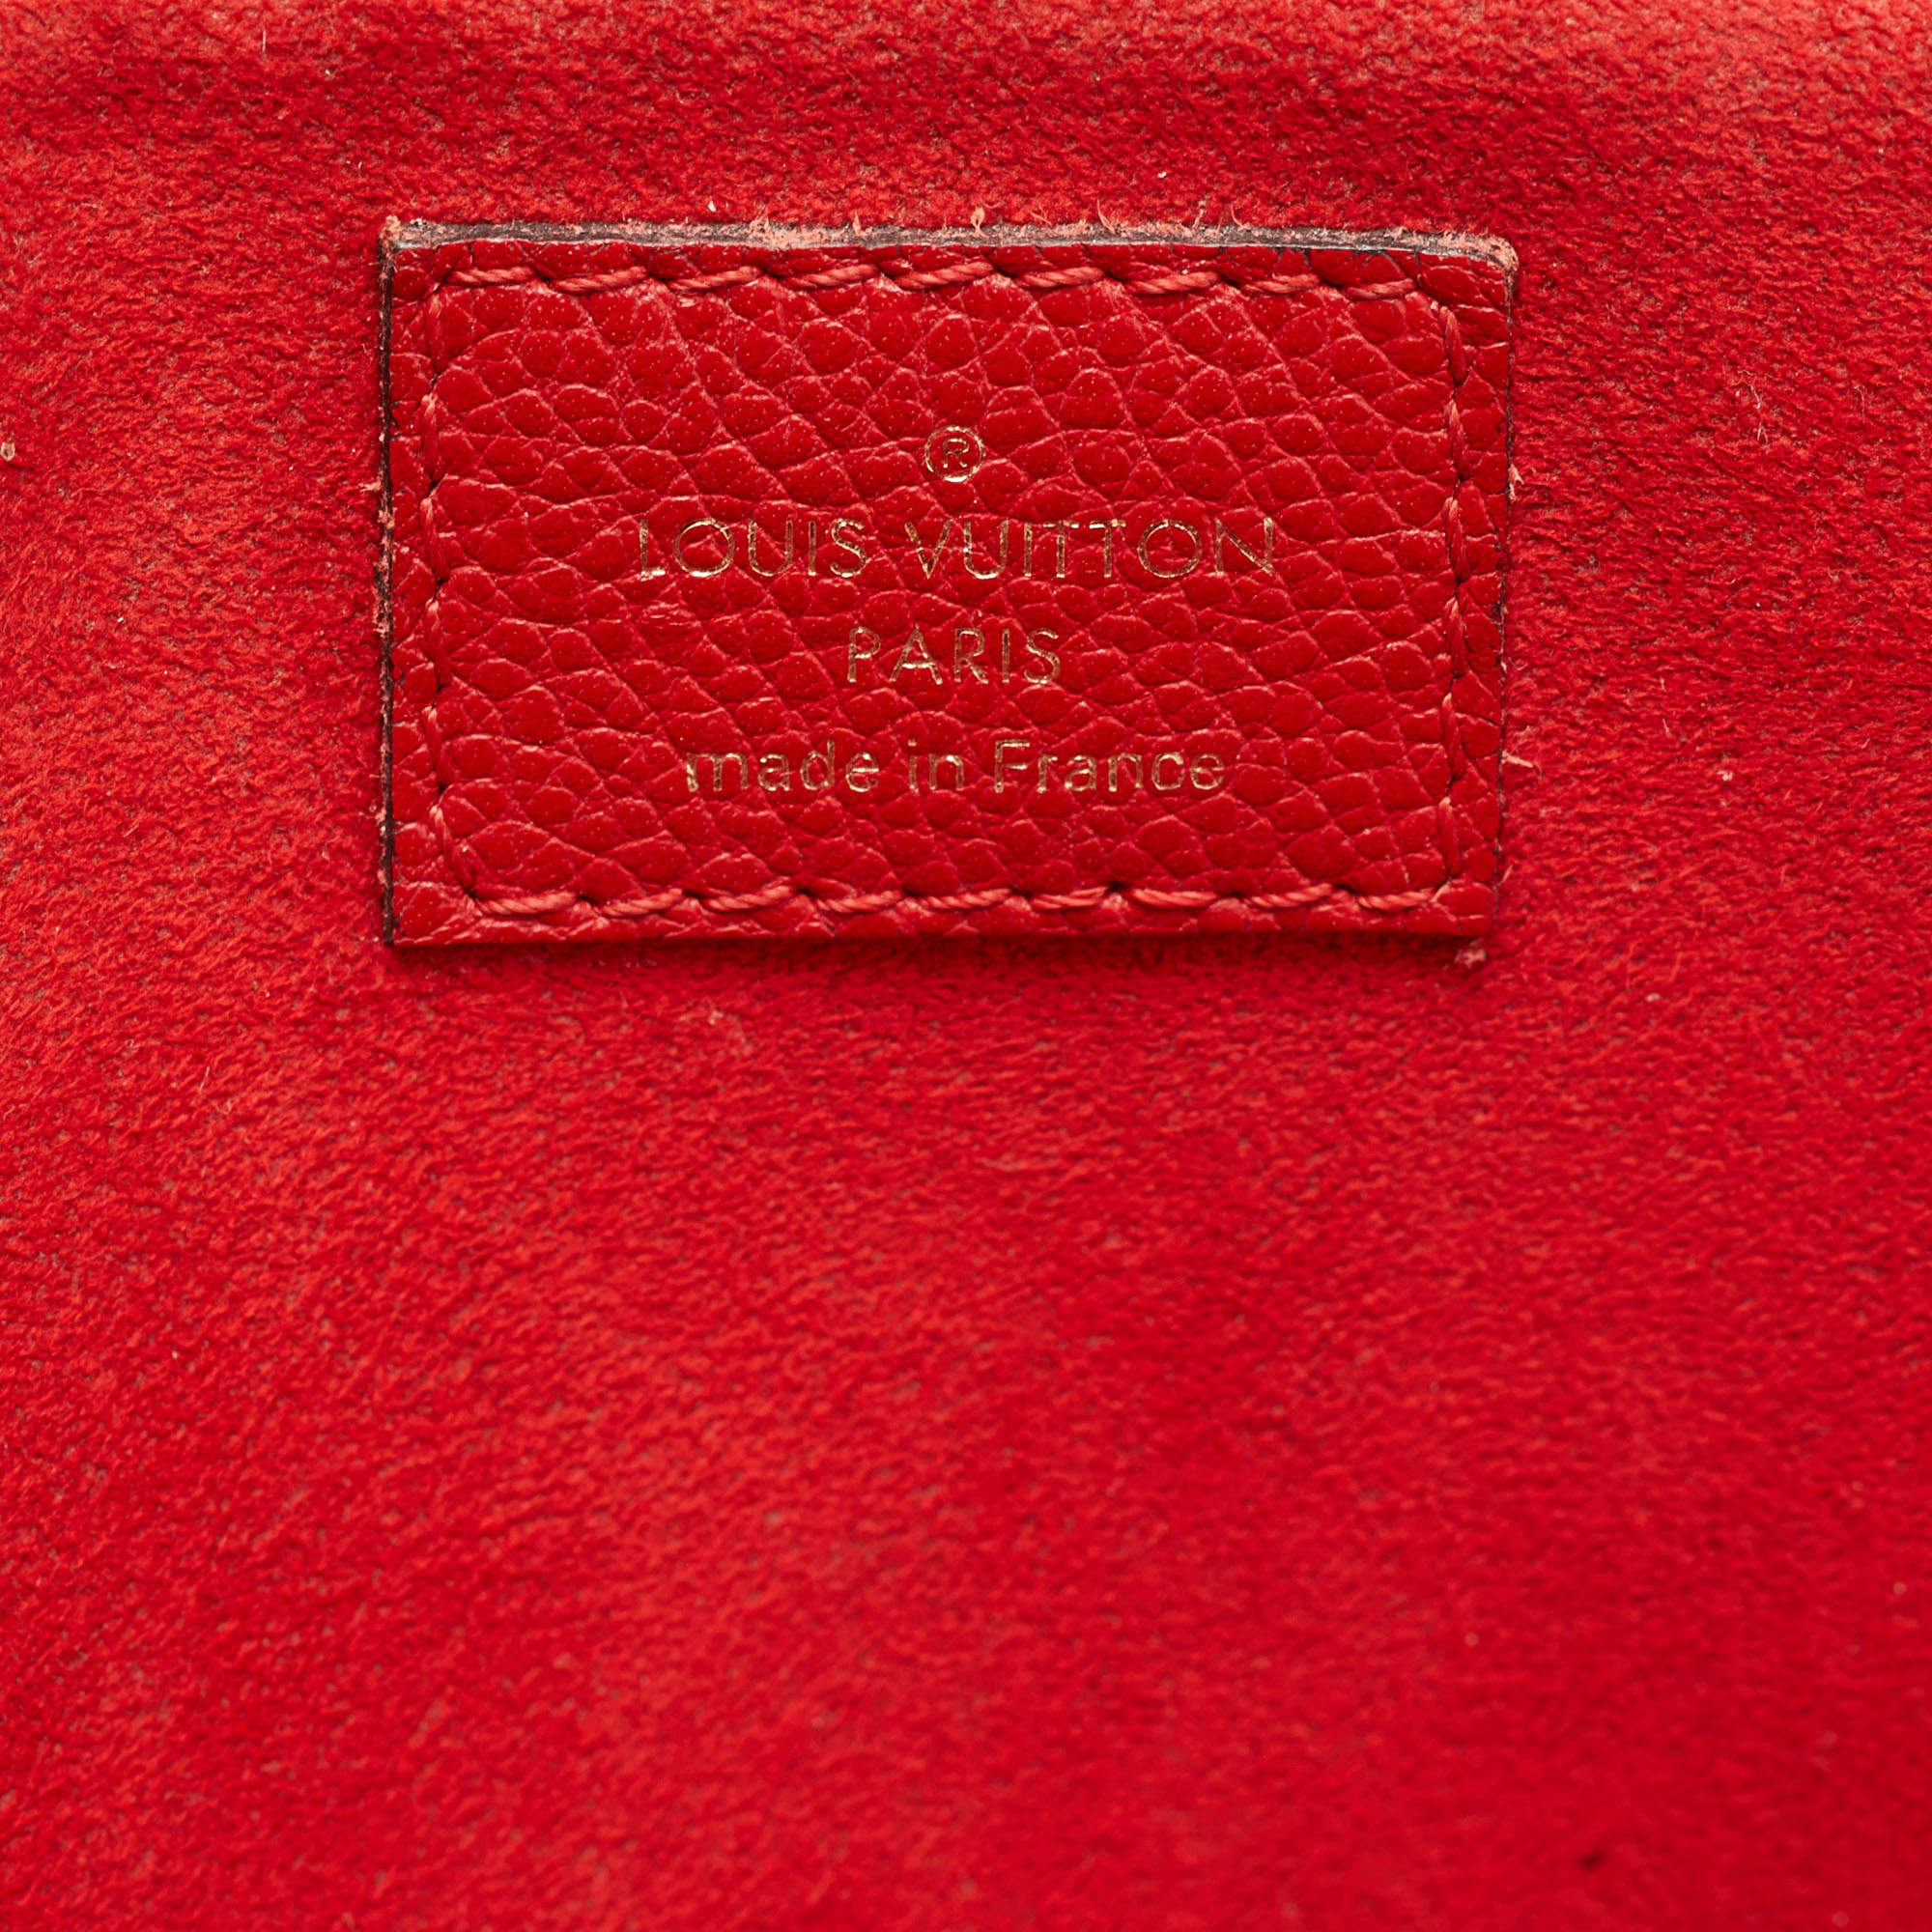 Louis Vuitton Cherry Monogram Canvas Alma B'N'B Bag Louis Vuitton